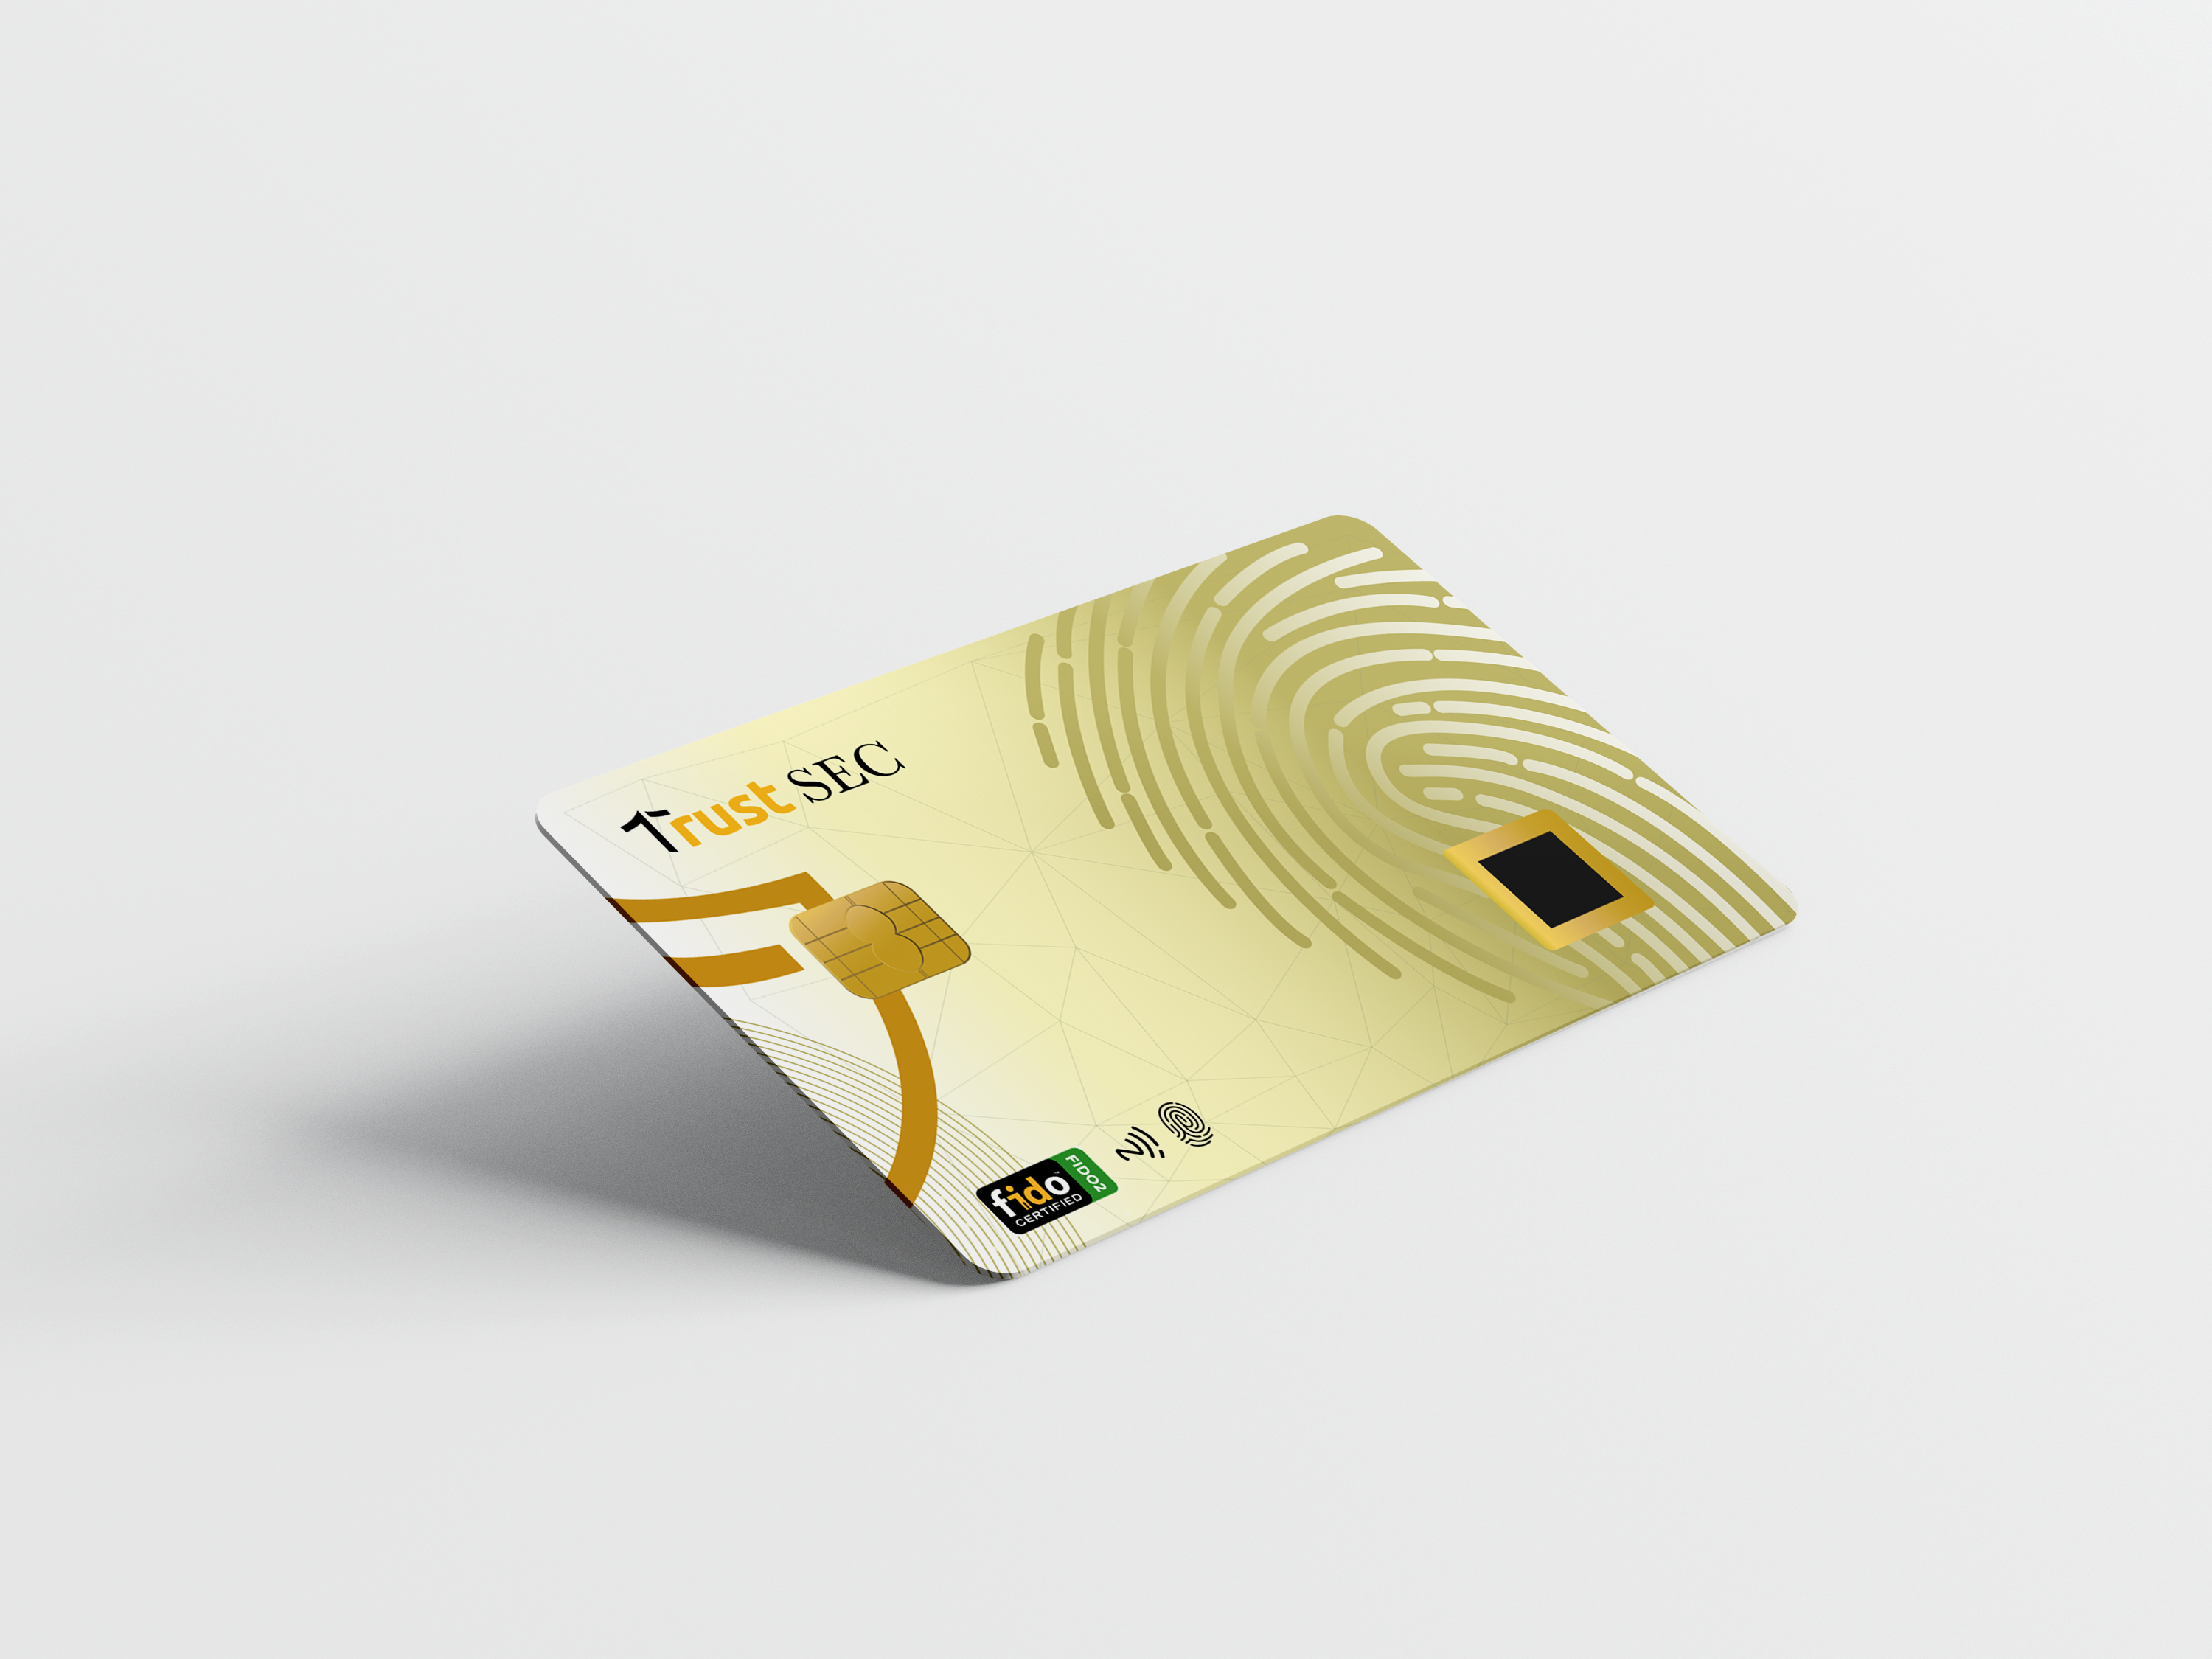 biometric-fido2-smartcard-auth